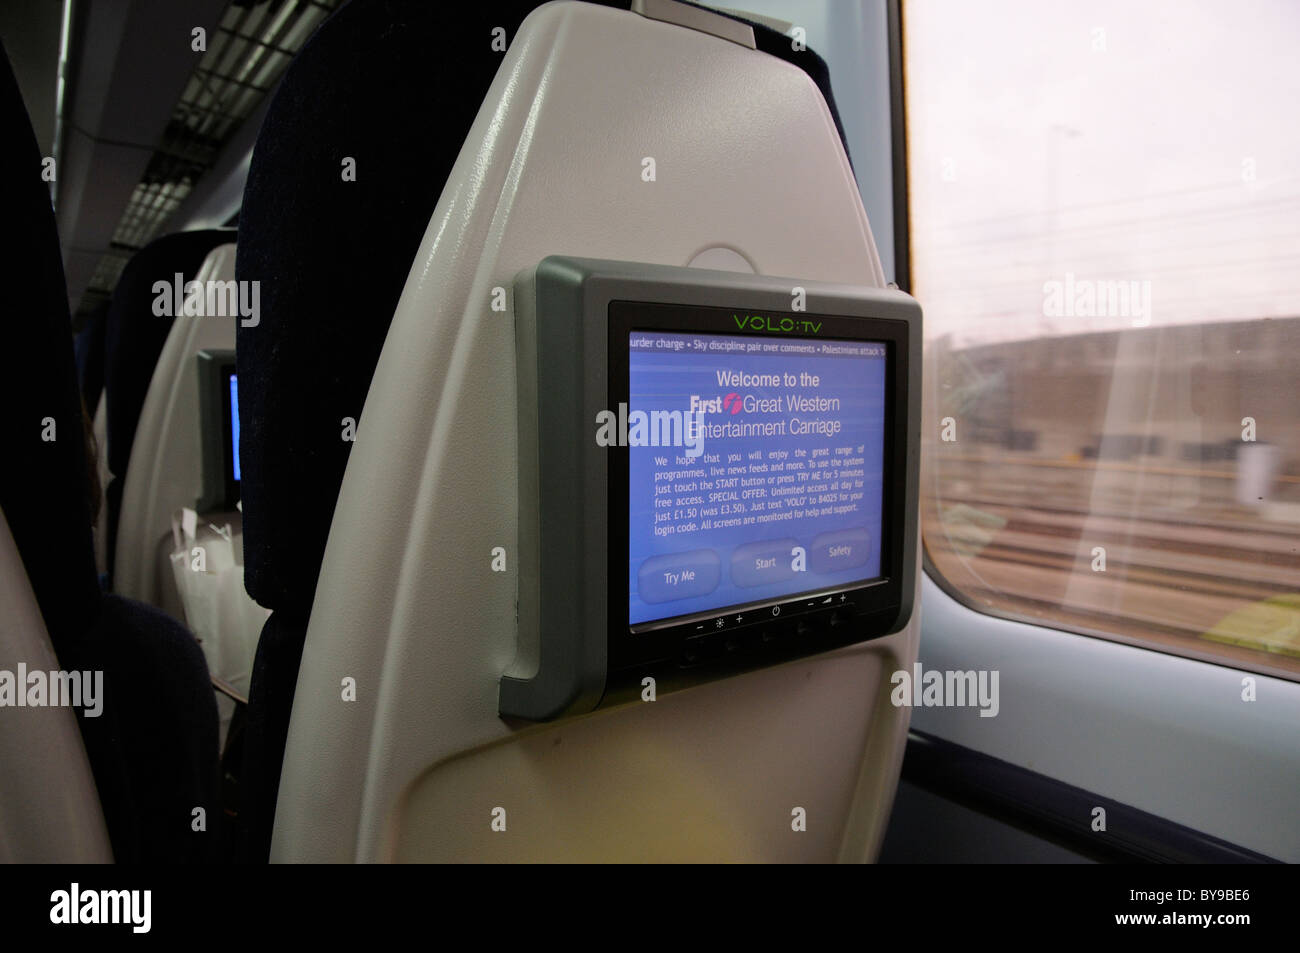 Ersten Great Western Unterhaltung Eisenbahn Wagen Rückenlehne Videobildschirm für das Ansehen von Unterhaltungsprogrammen und News Berichte Stockfoto